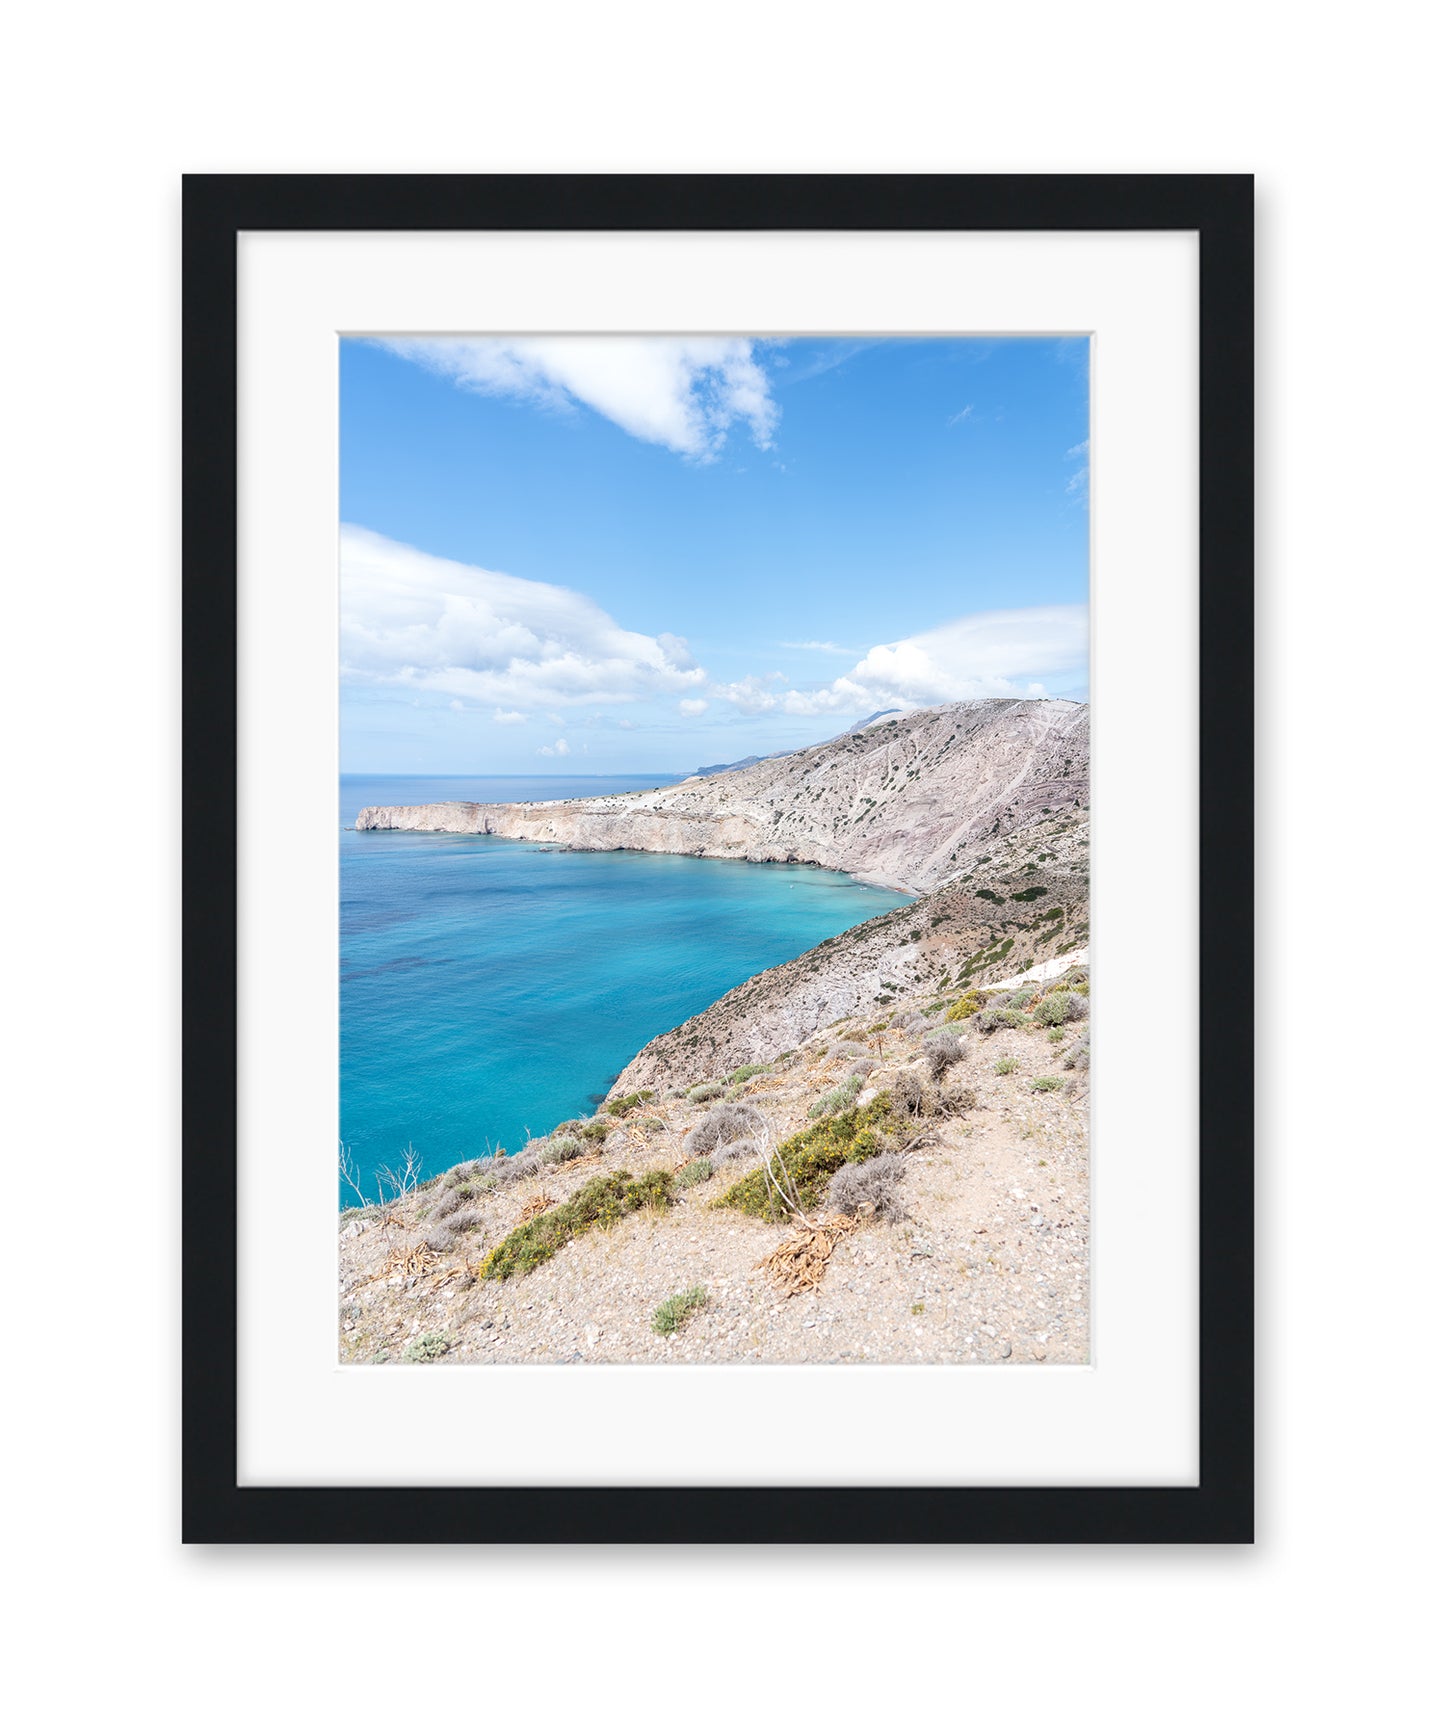 Blue and White Aegean Sea Landscape in Milos, Greece